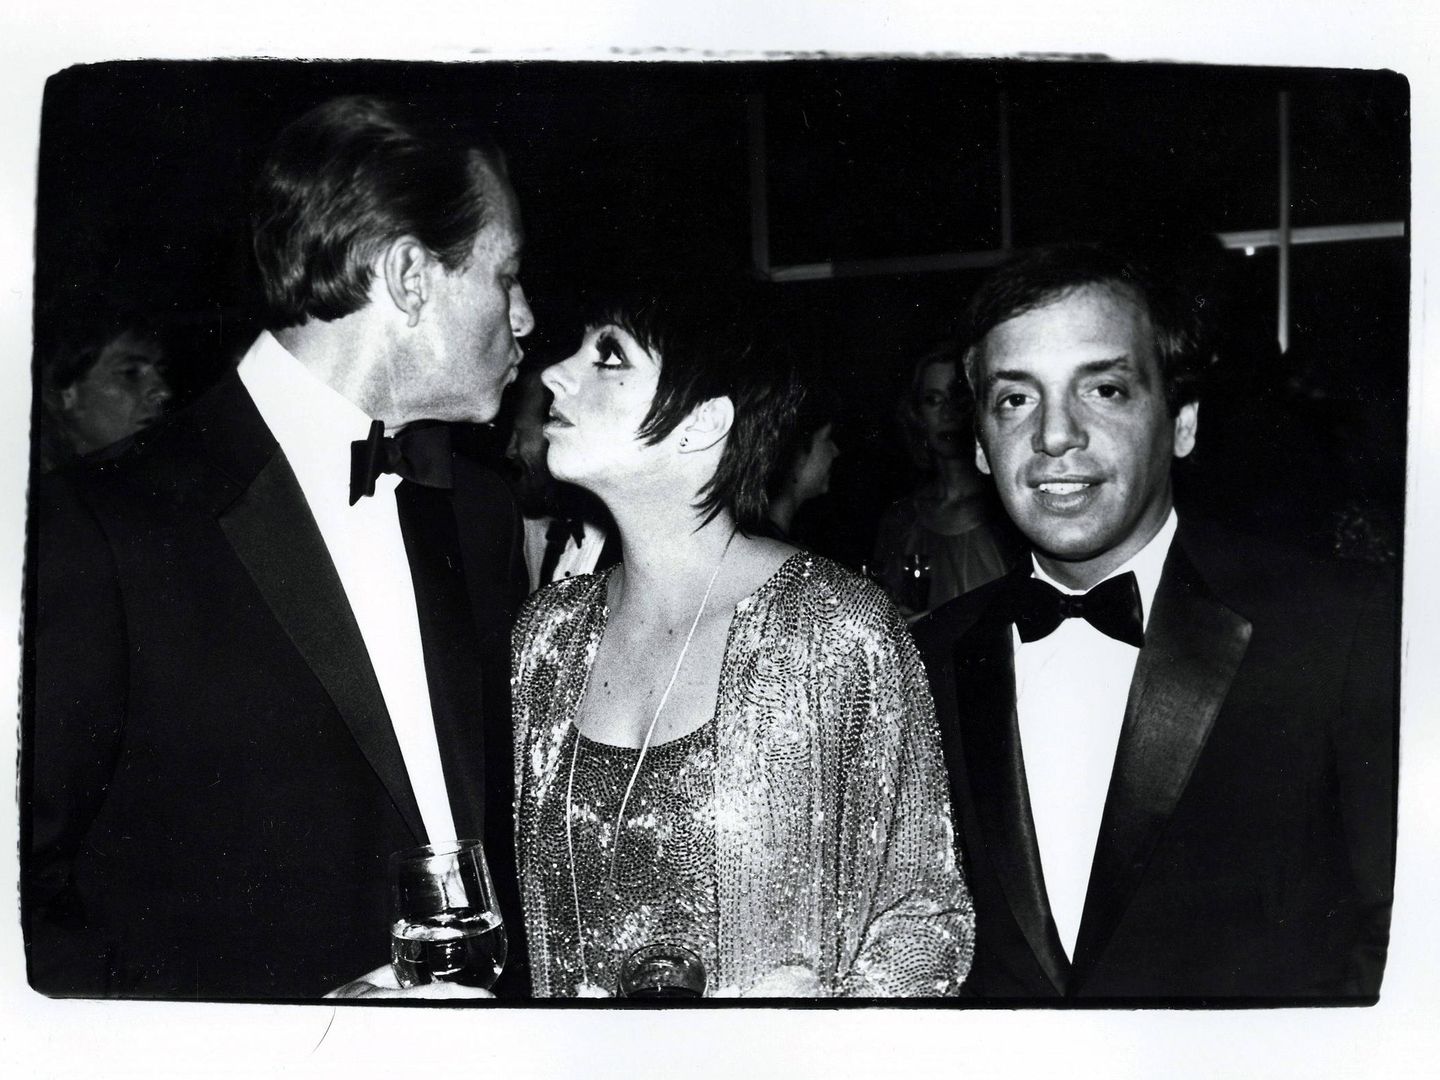 Fotografía sin fecha cedida que muestra  (de izq. a dcha.) al diseñador de moda Halston, la cantante Liza Minnelli y el dueño de la discoteca neoyorquina Studio 54, Steve Rubell. (EFE)